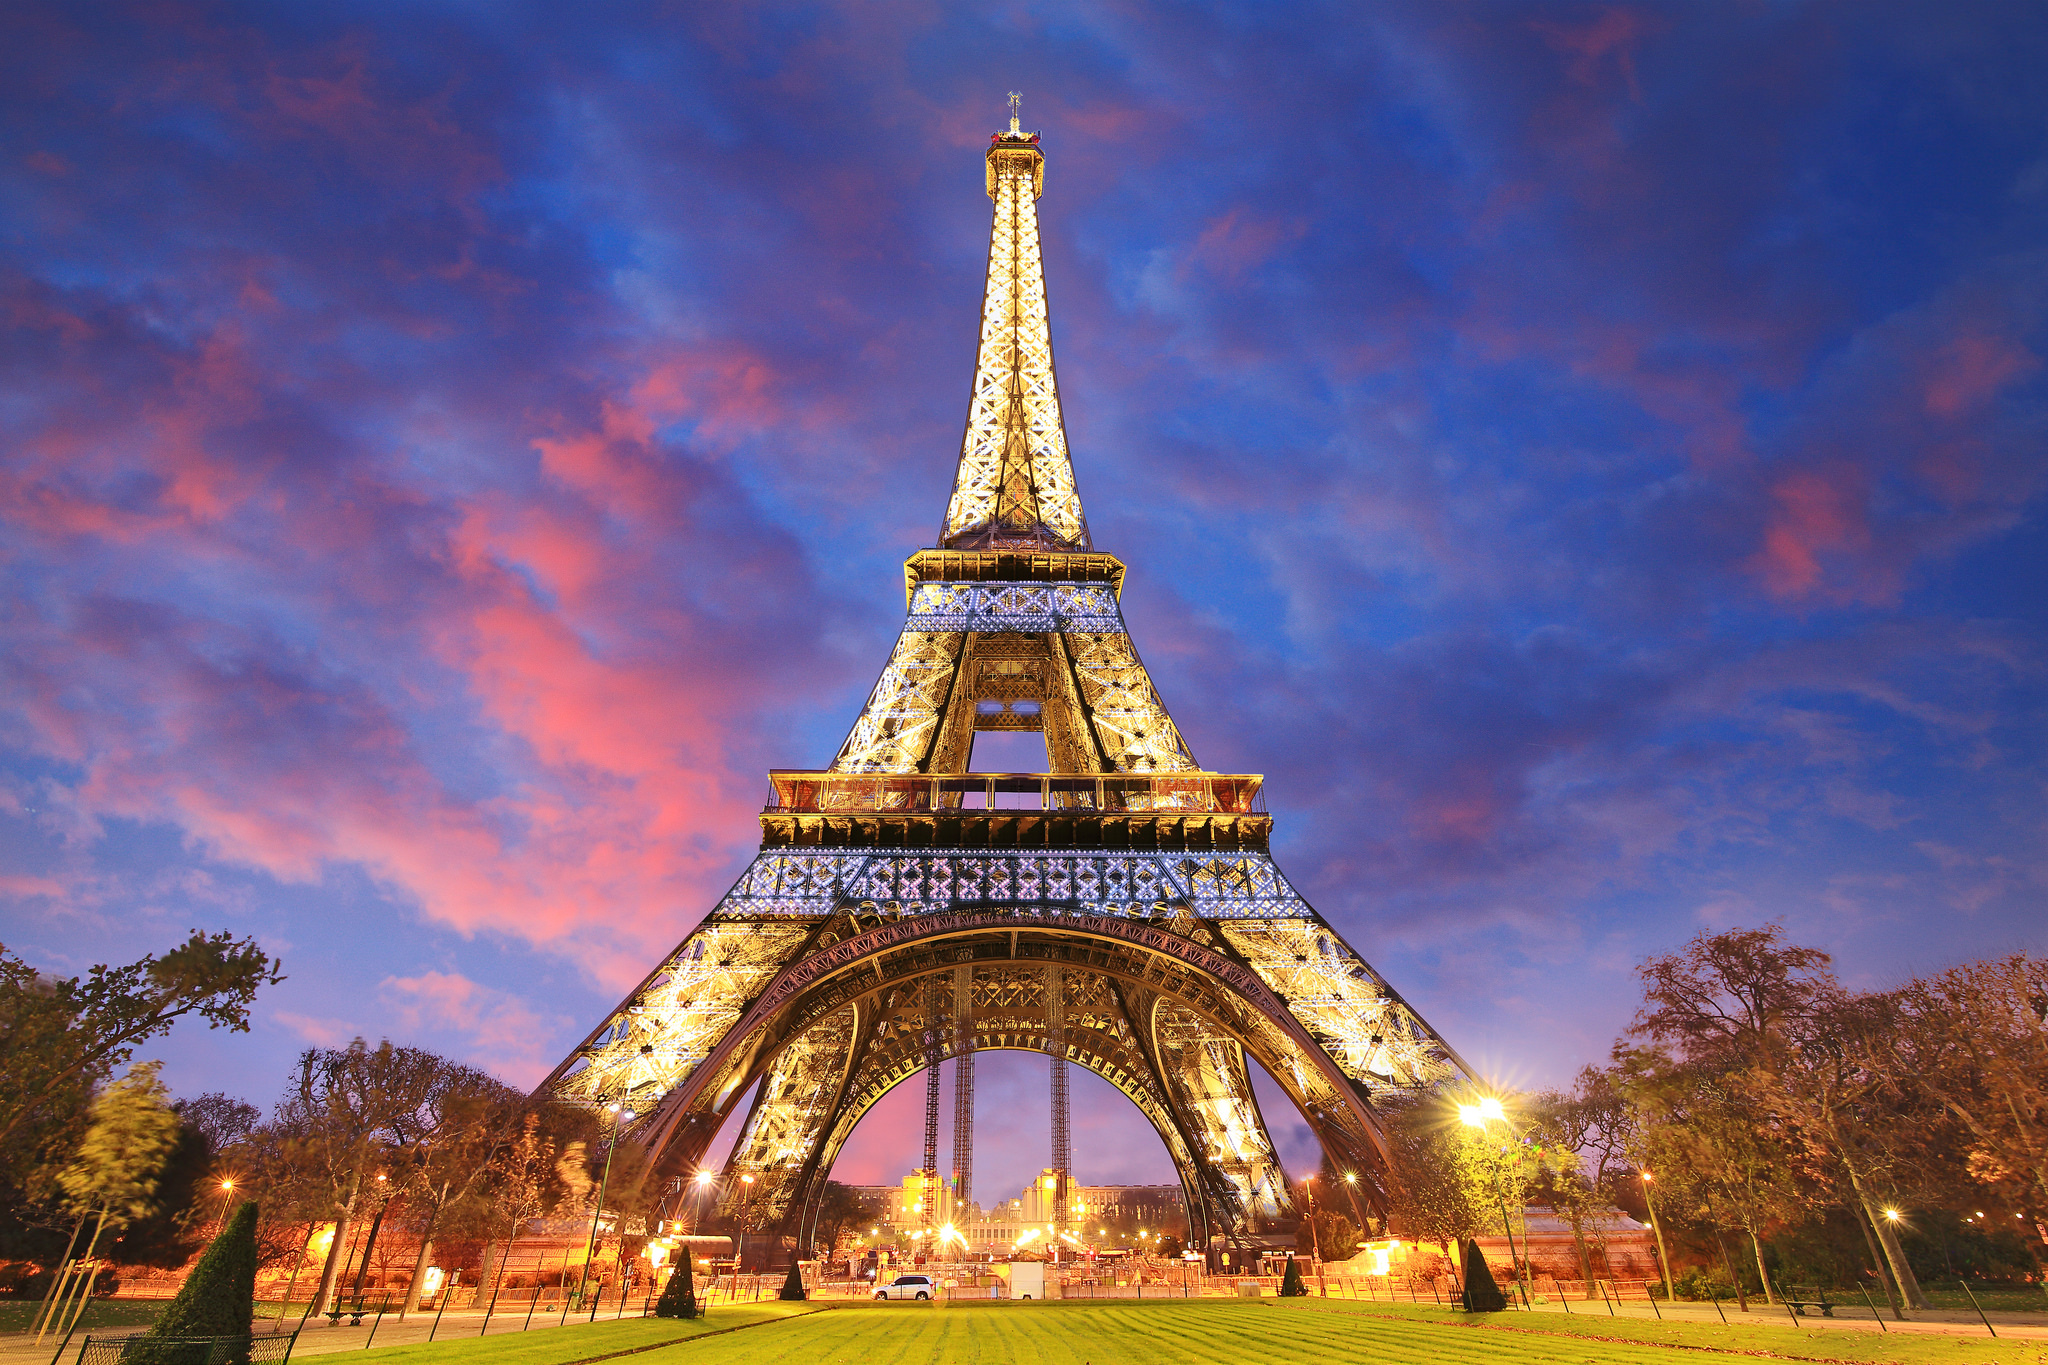 Eiffel Tower Wallpaper Sunset